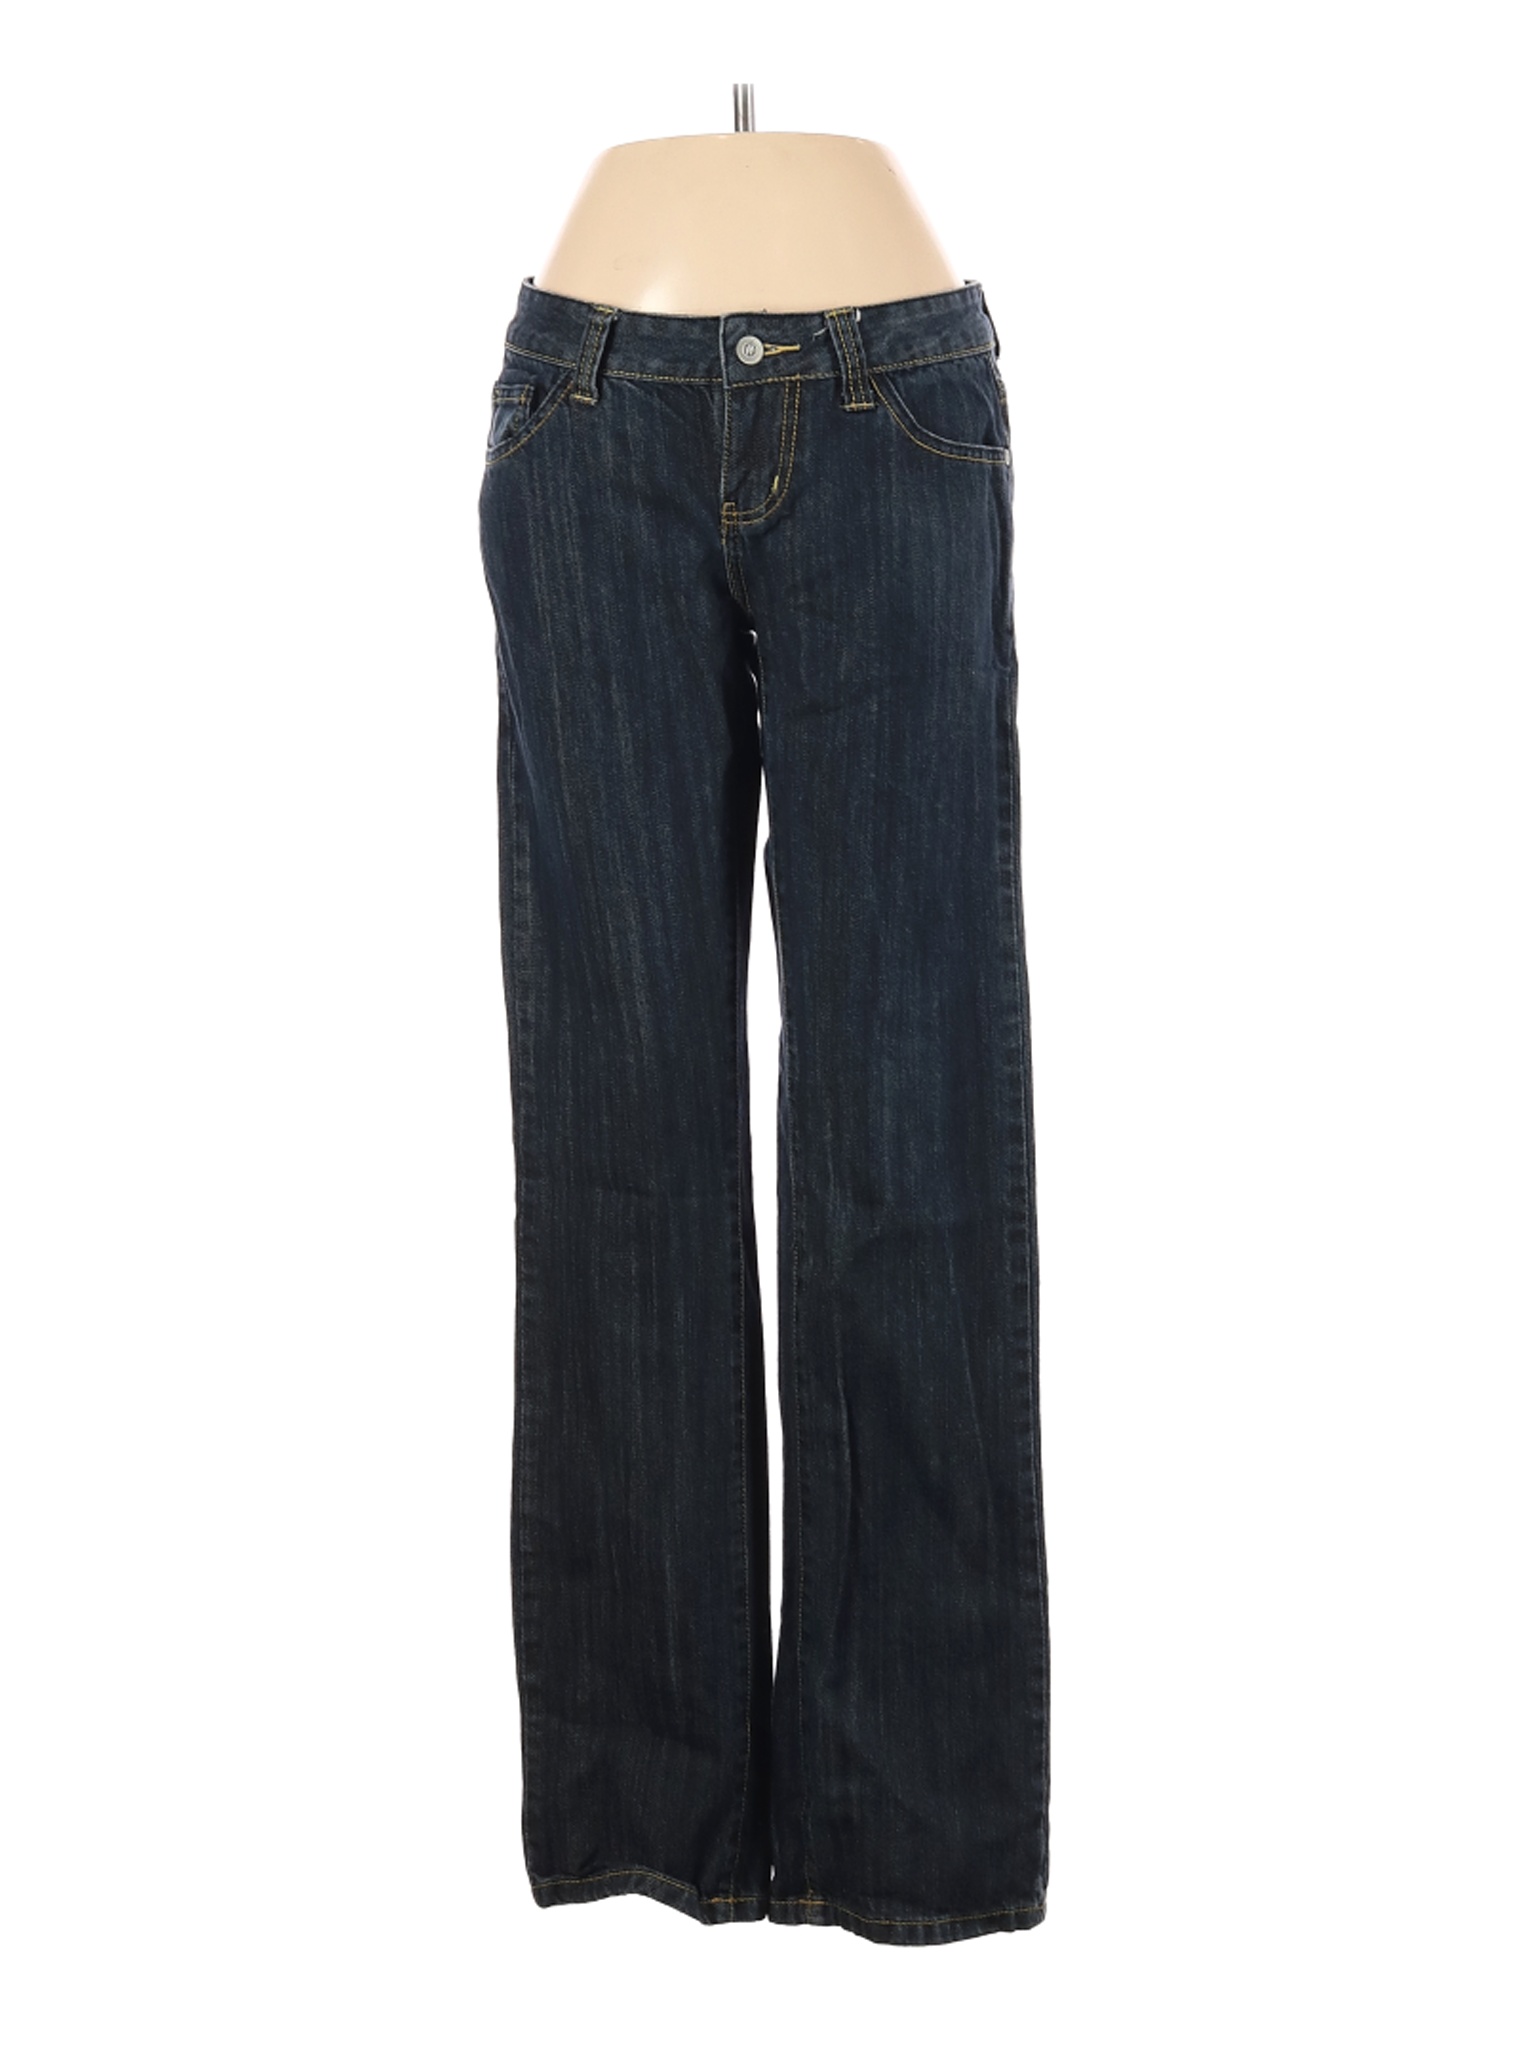 Tex by MaxAzria Women Blue Jeans 25W | eBay